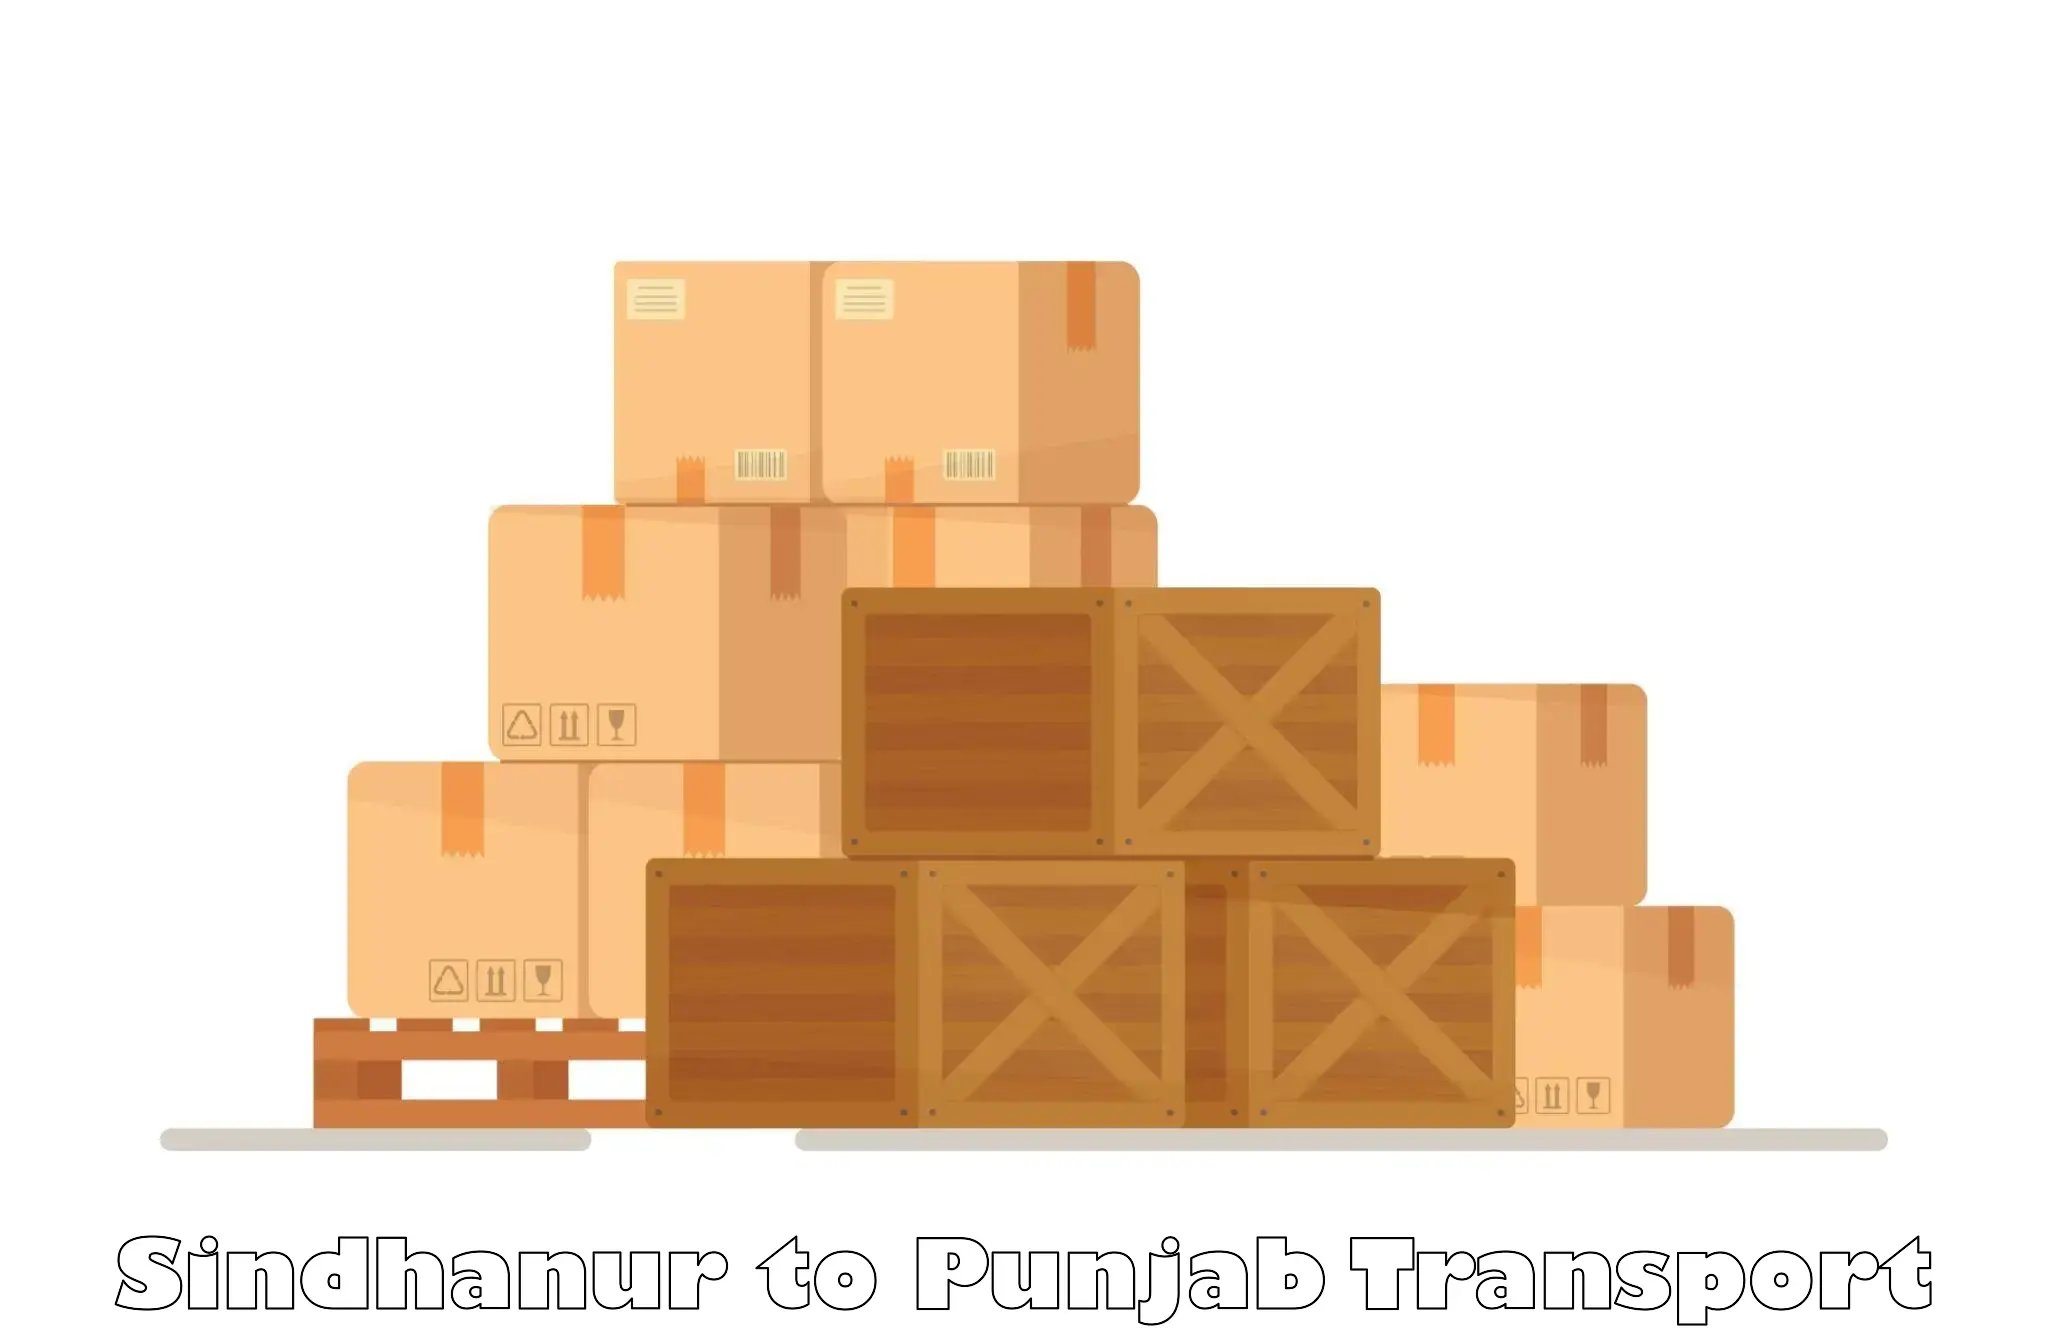 Furniture transport service Sindhanur to Mohali